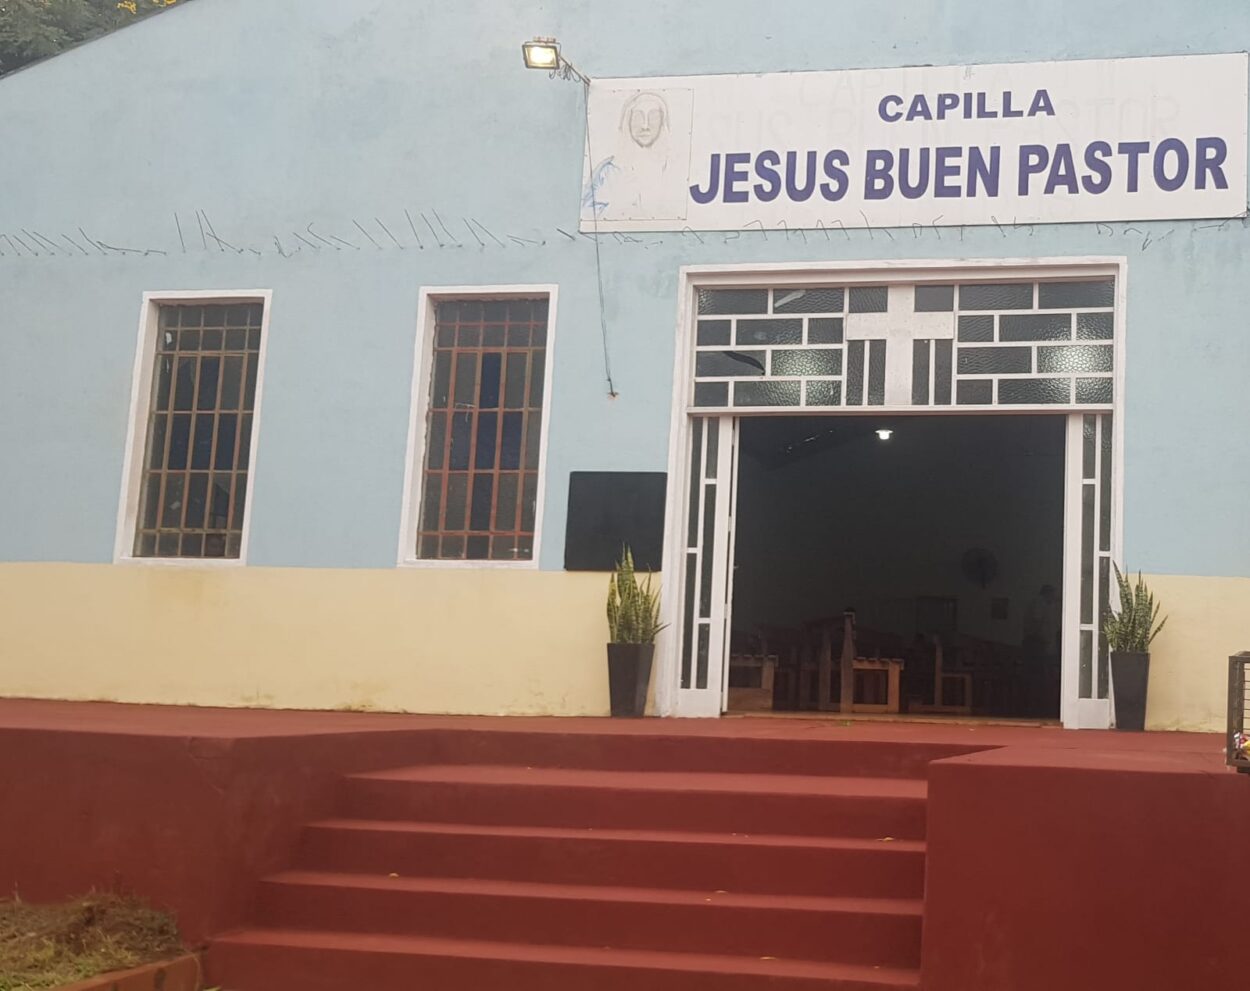 Capilla “Jesús Buen Pastor” celebrará su fiesta patronal este domingo 21 imagen-58